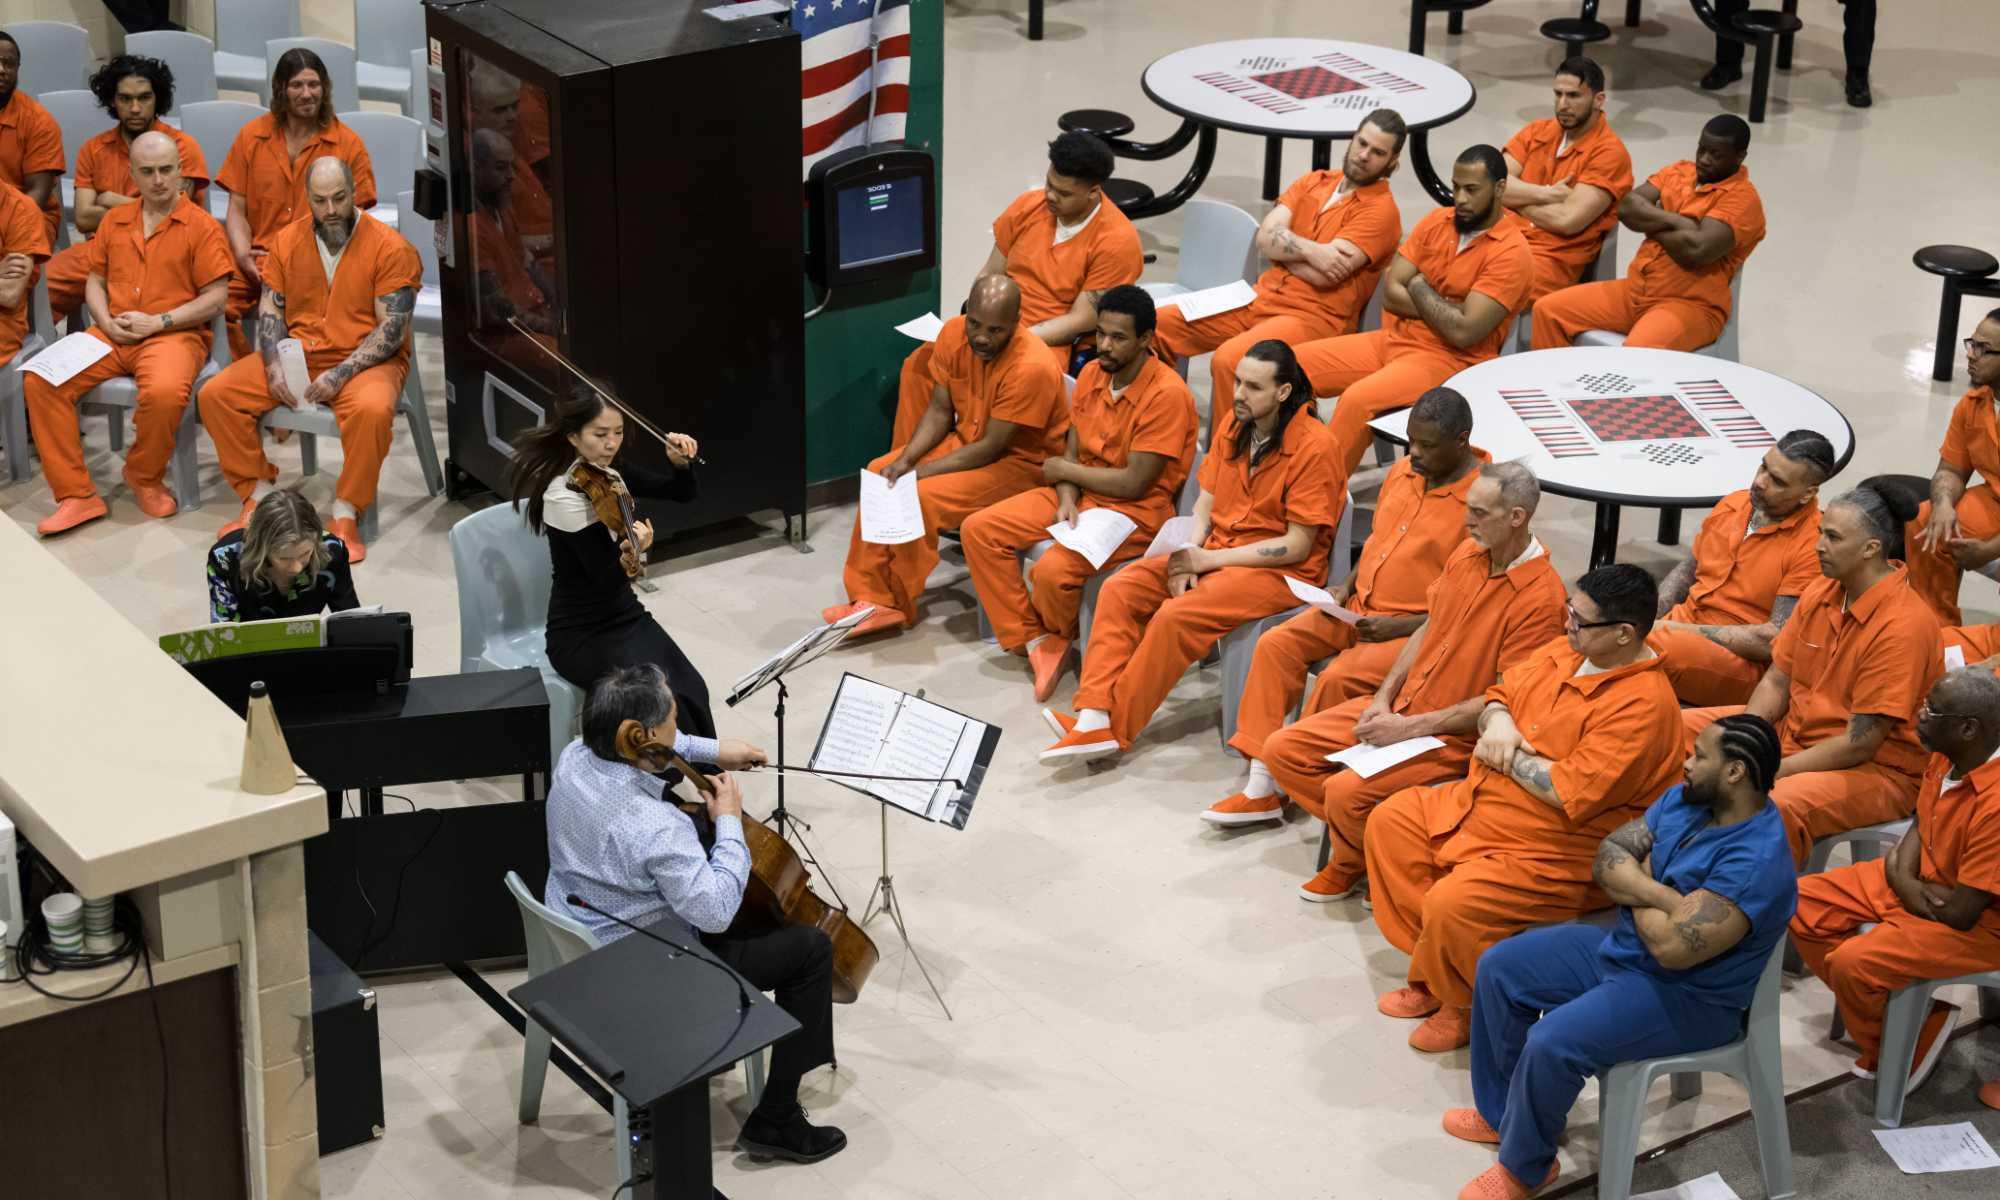 ROC城市音乐会的高架视图为被监禁的人演奏音乐.